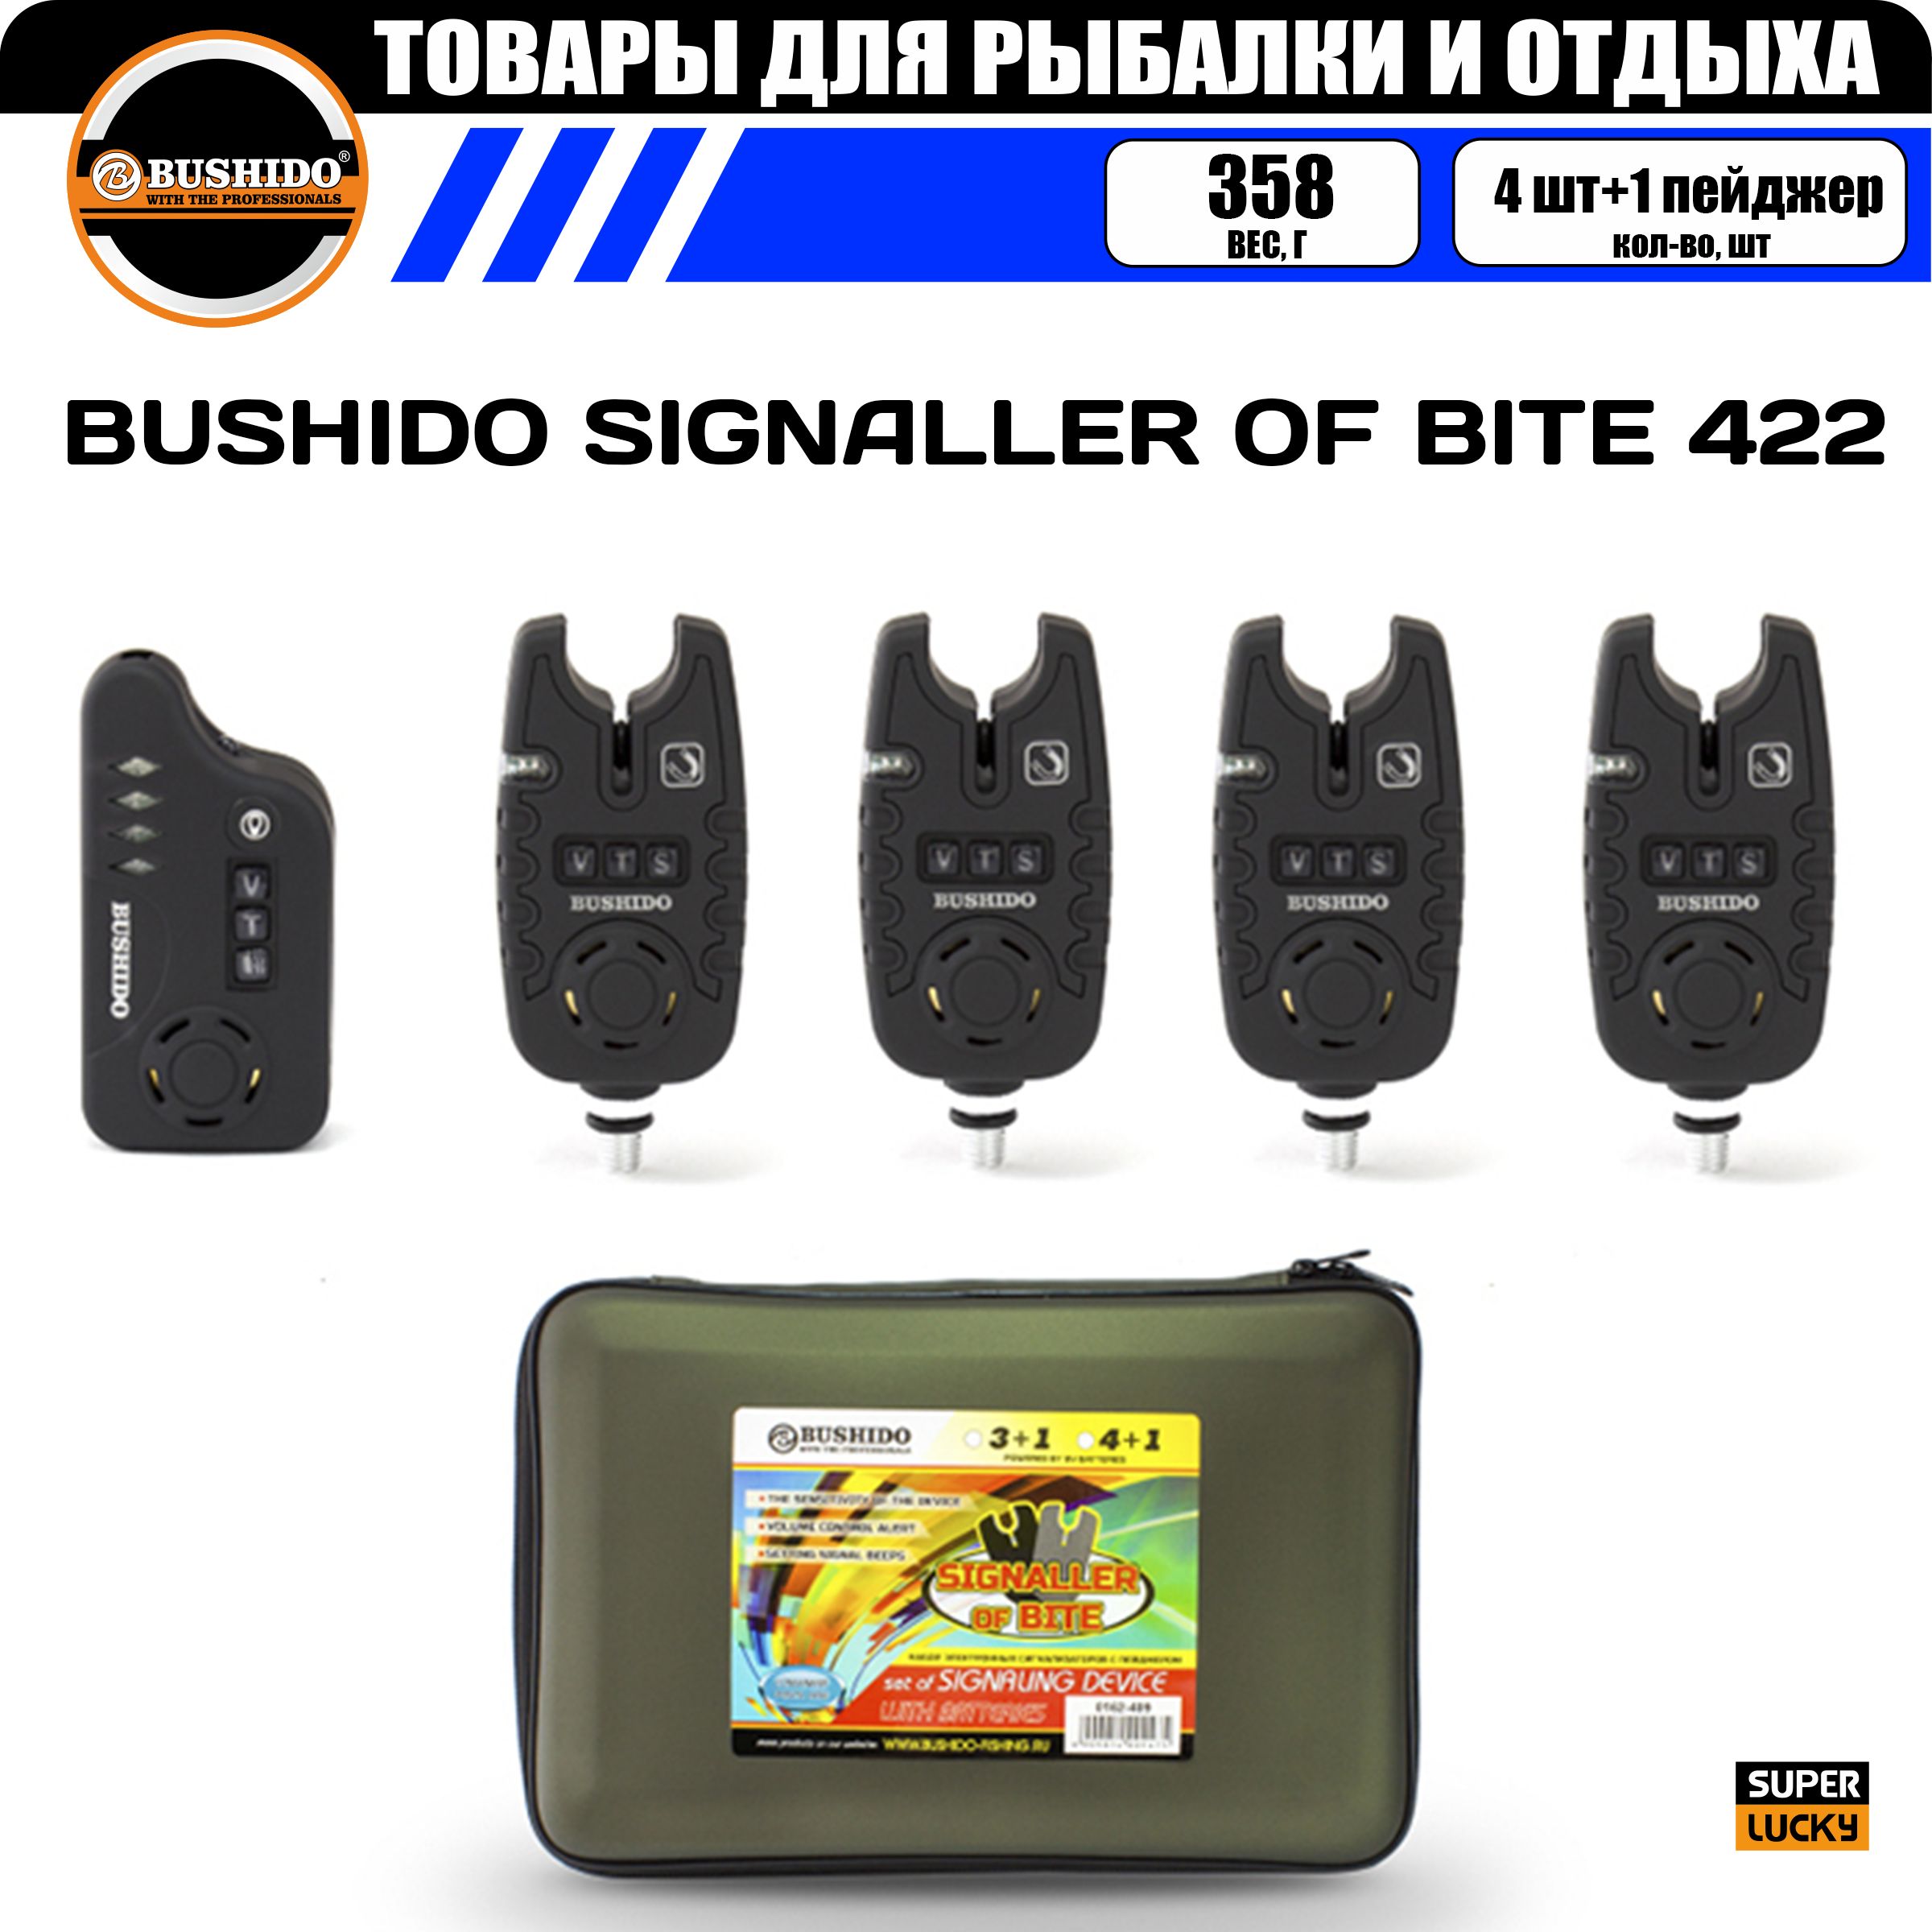 Набор сигнализаторов поклёвки BUSHIDO SIGNALLER OF BITE 422 (4шт+1пейджер), для карповой